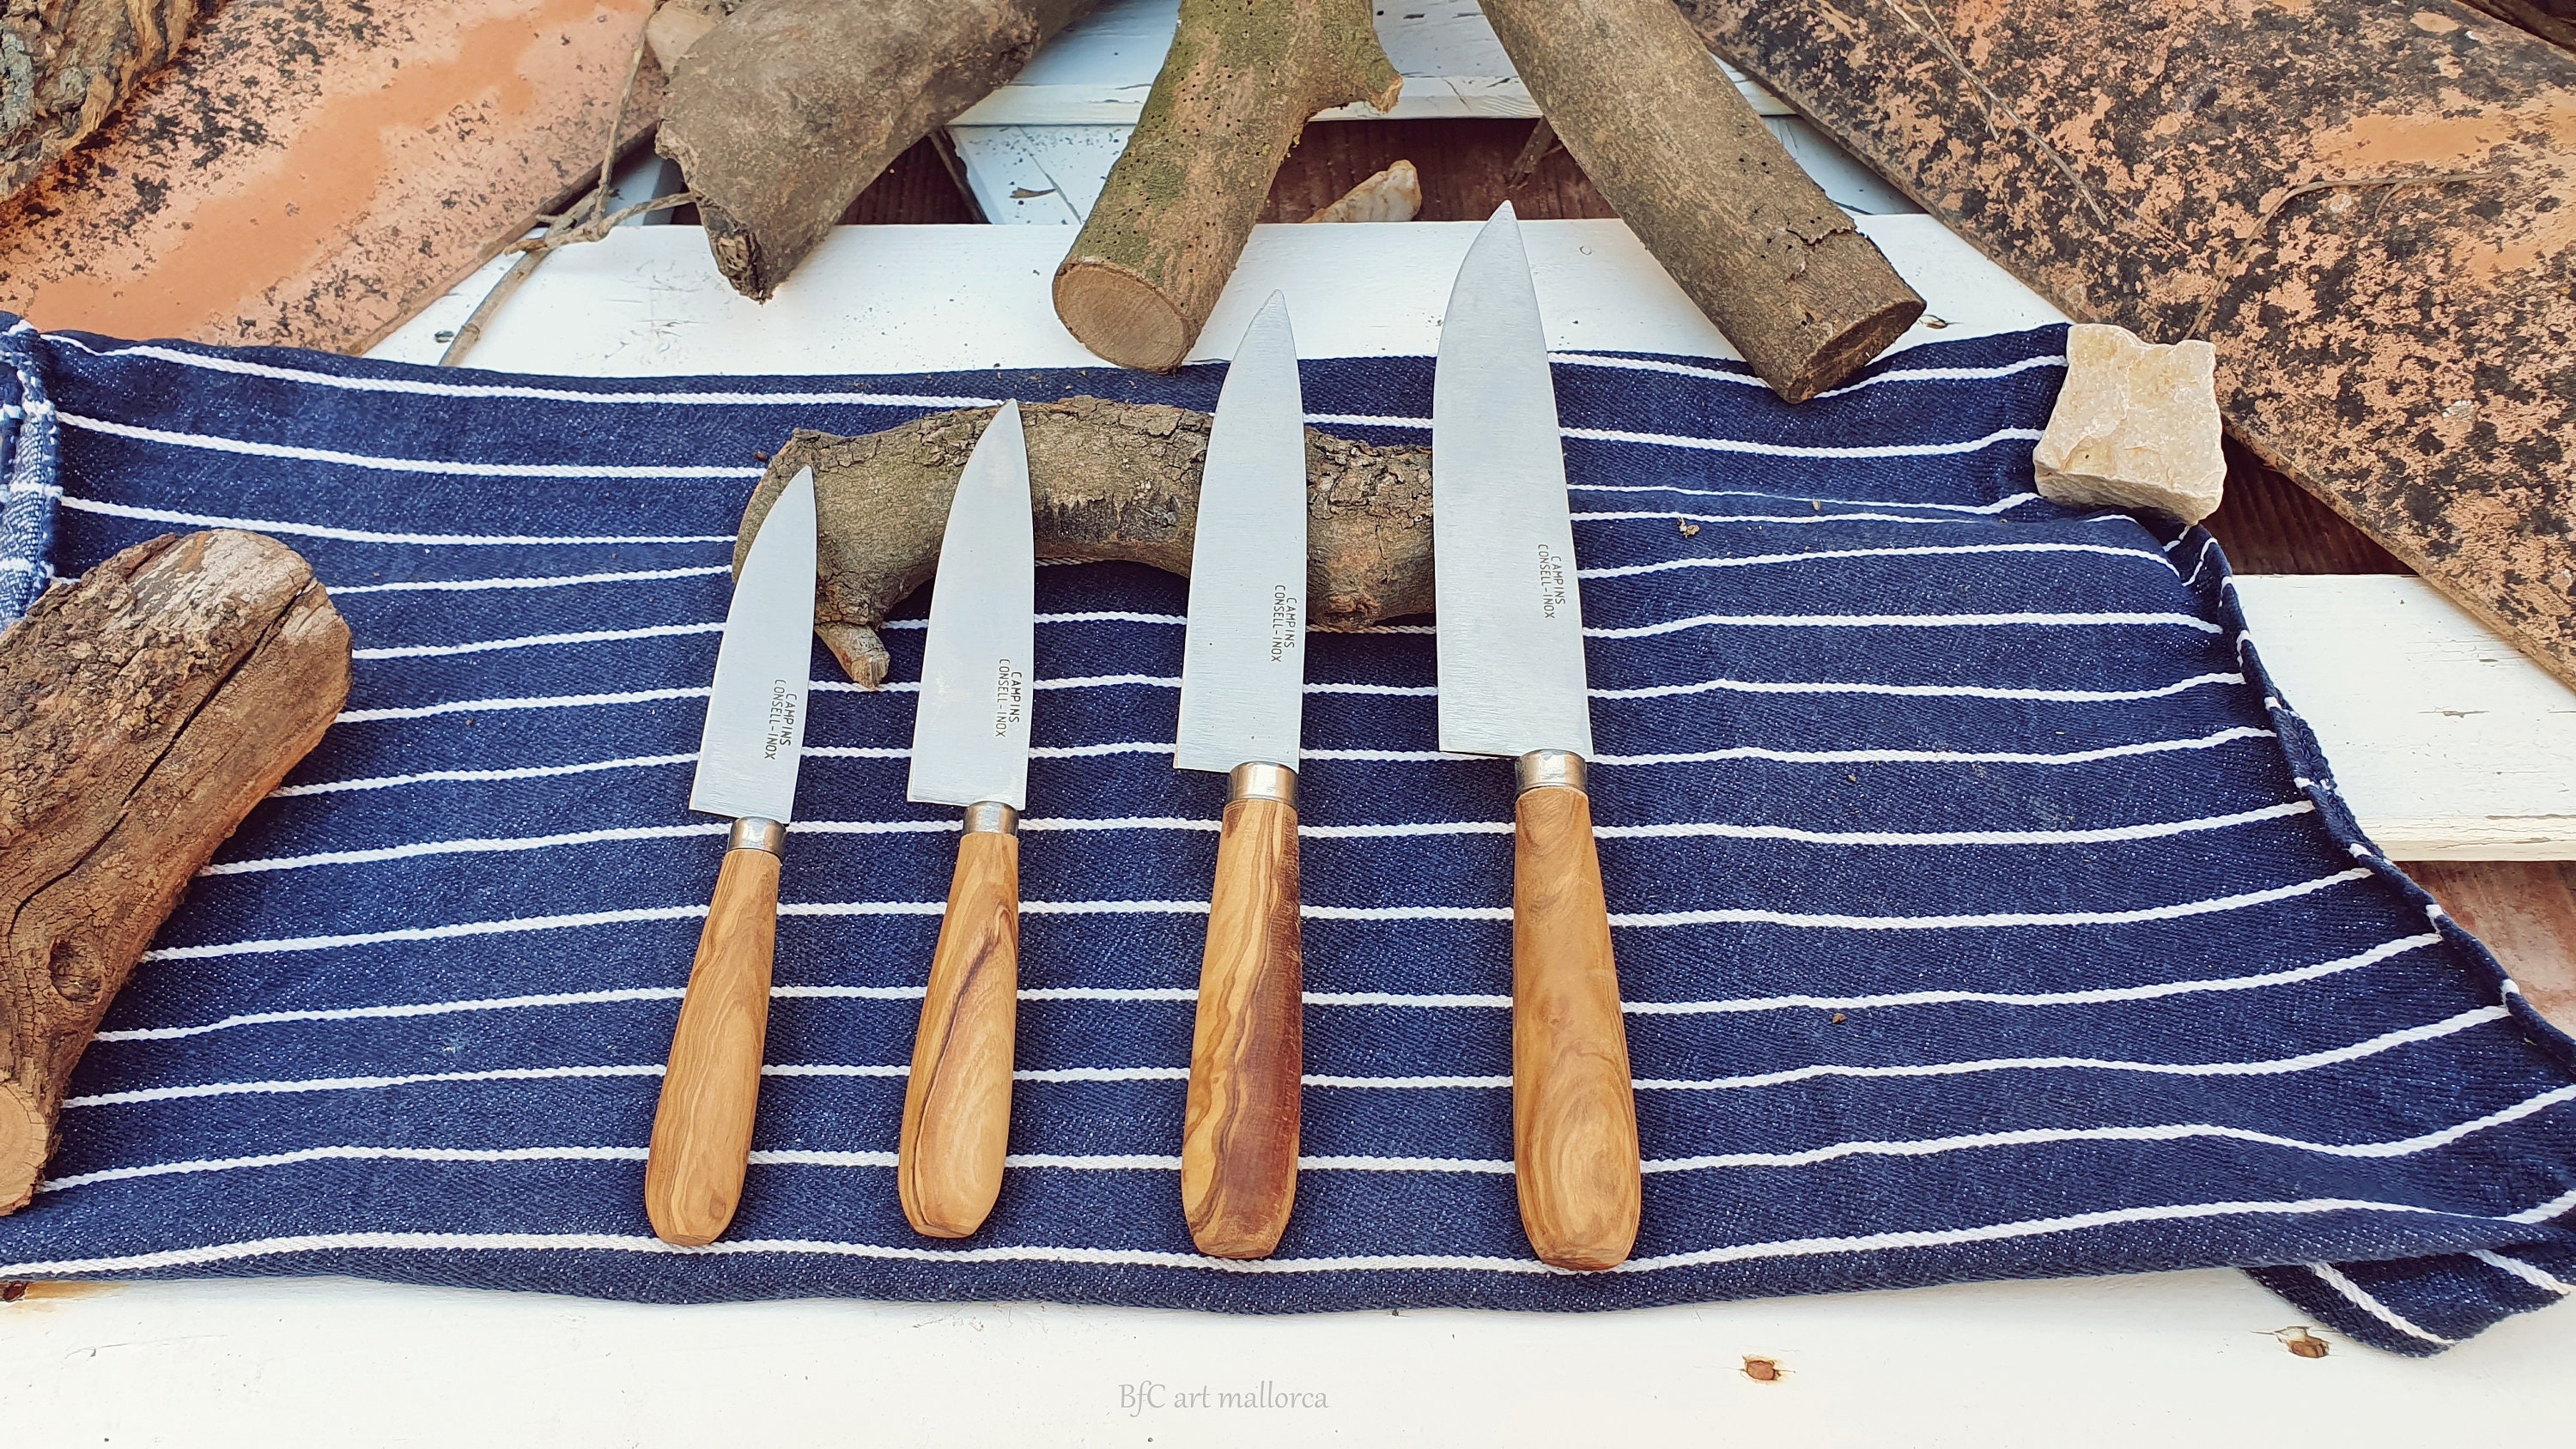 Cuchillo de carne para mesa con motivo flor y mango en madera de olivo